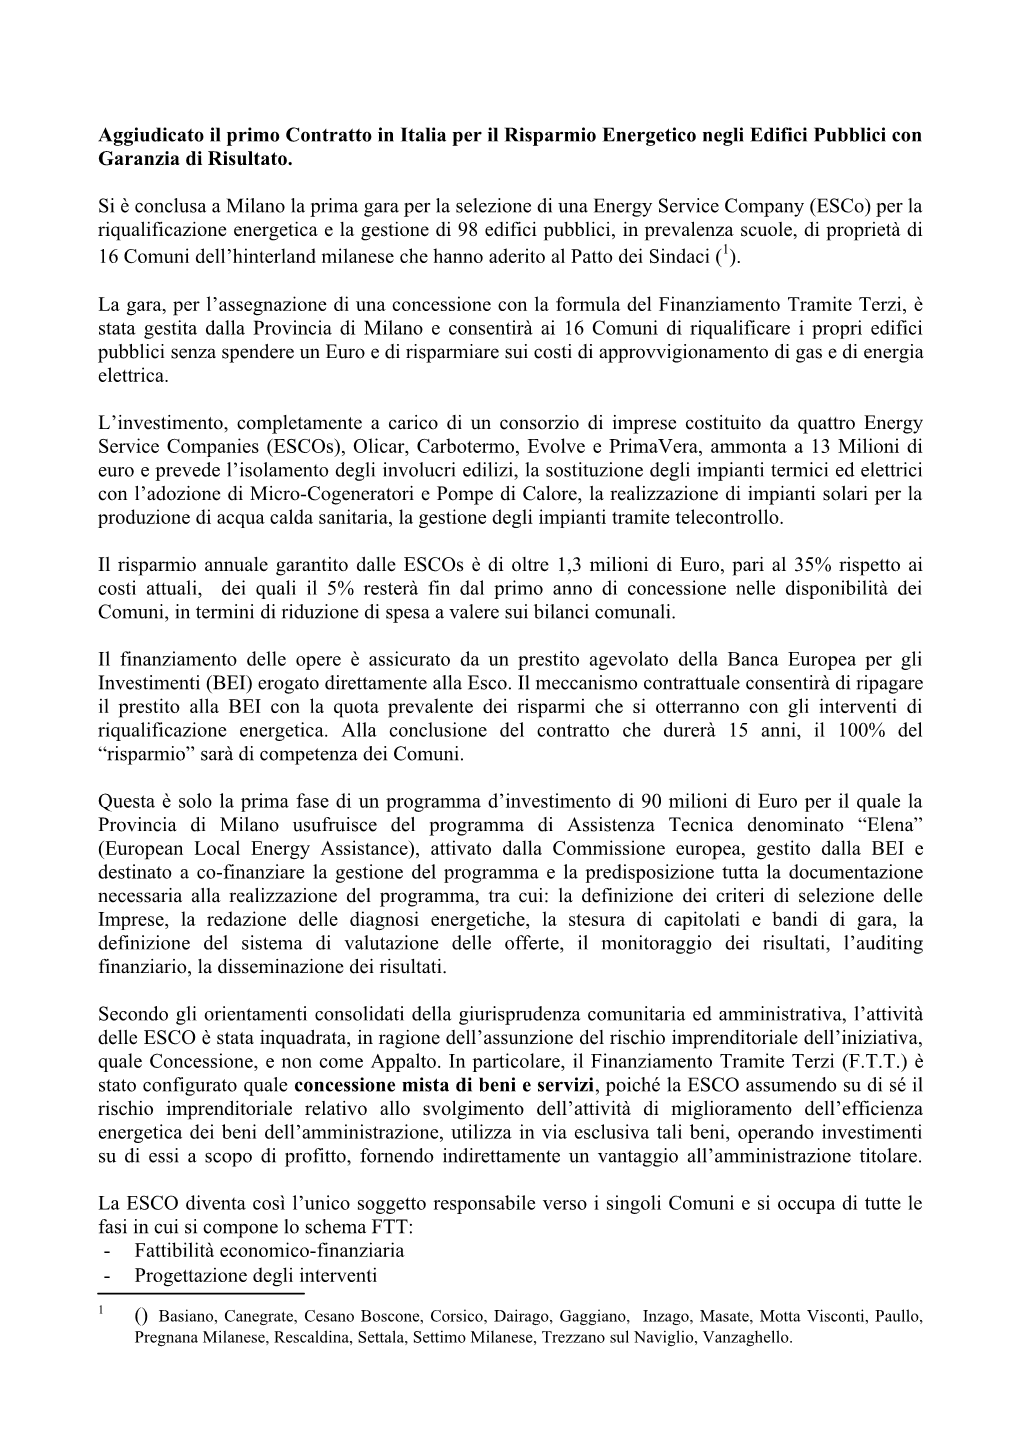 Aggiudicato Il Primo Contratto Di Prestazione Per Il Risparmio Energetico Con Garanzia Di Risultato in Italia